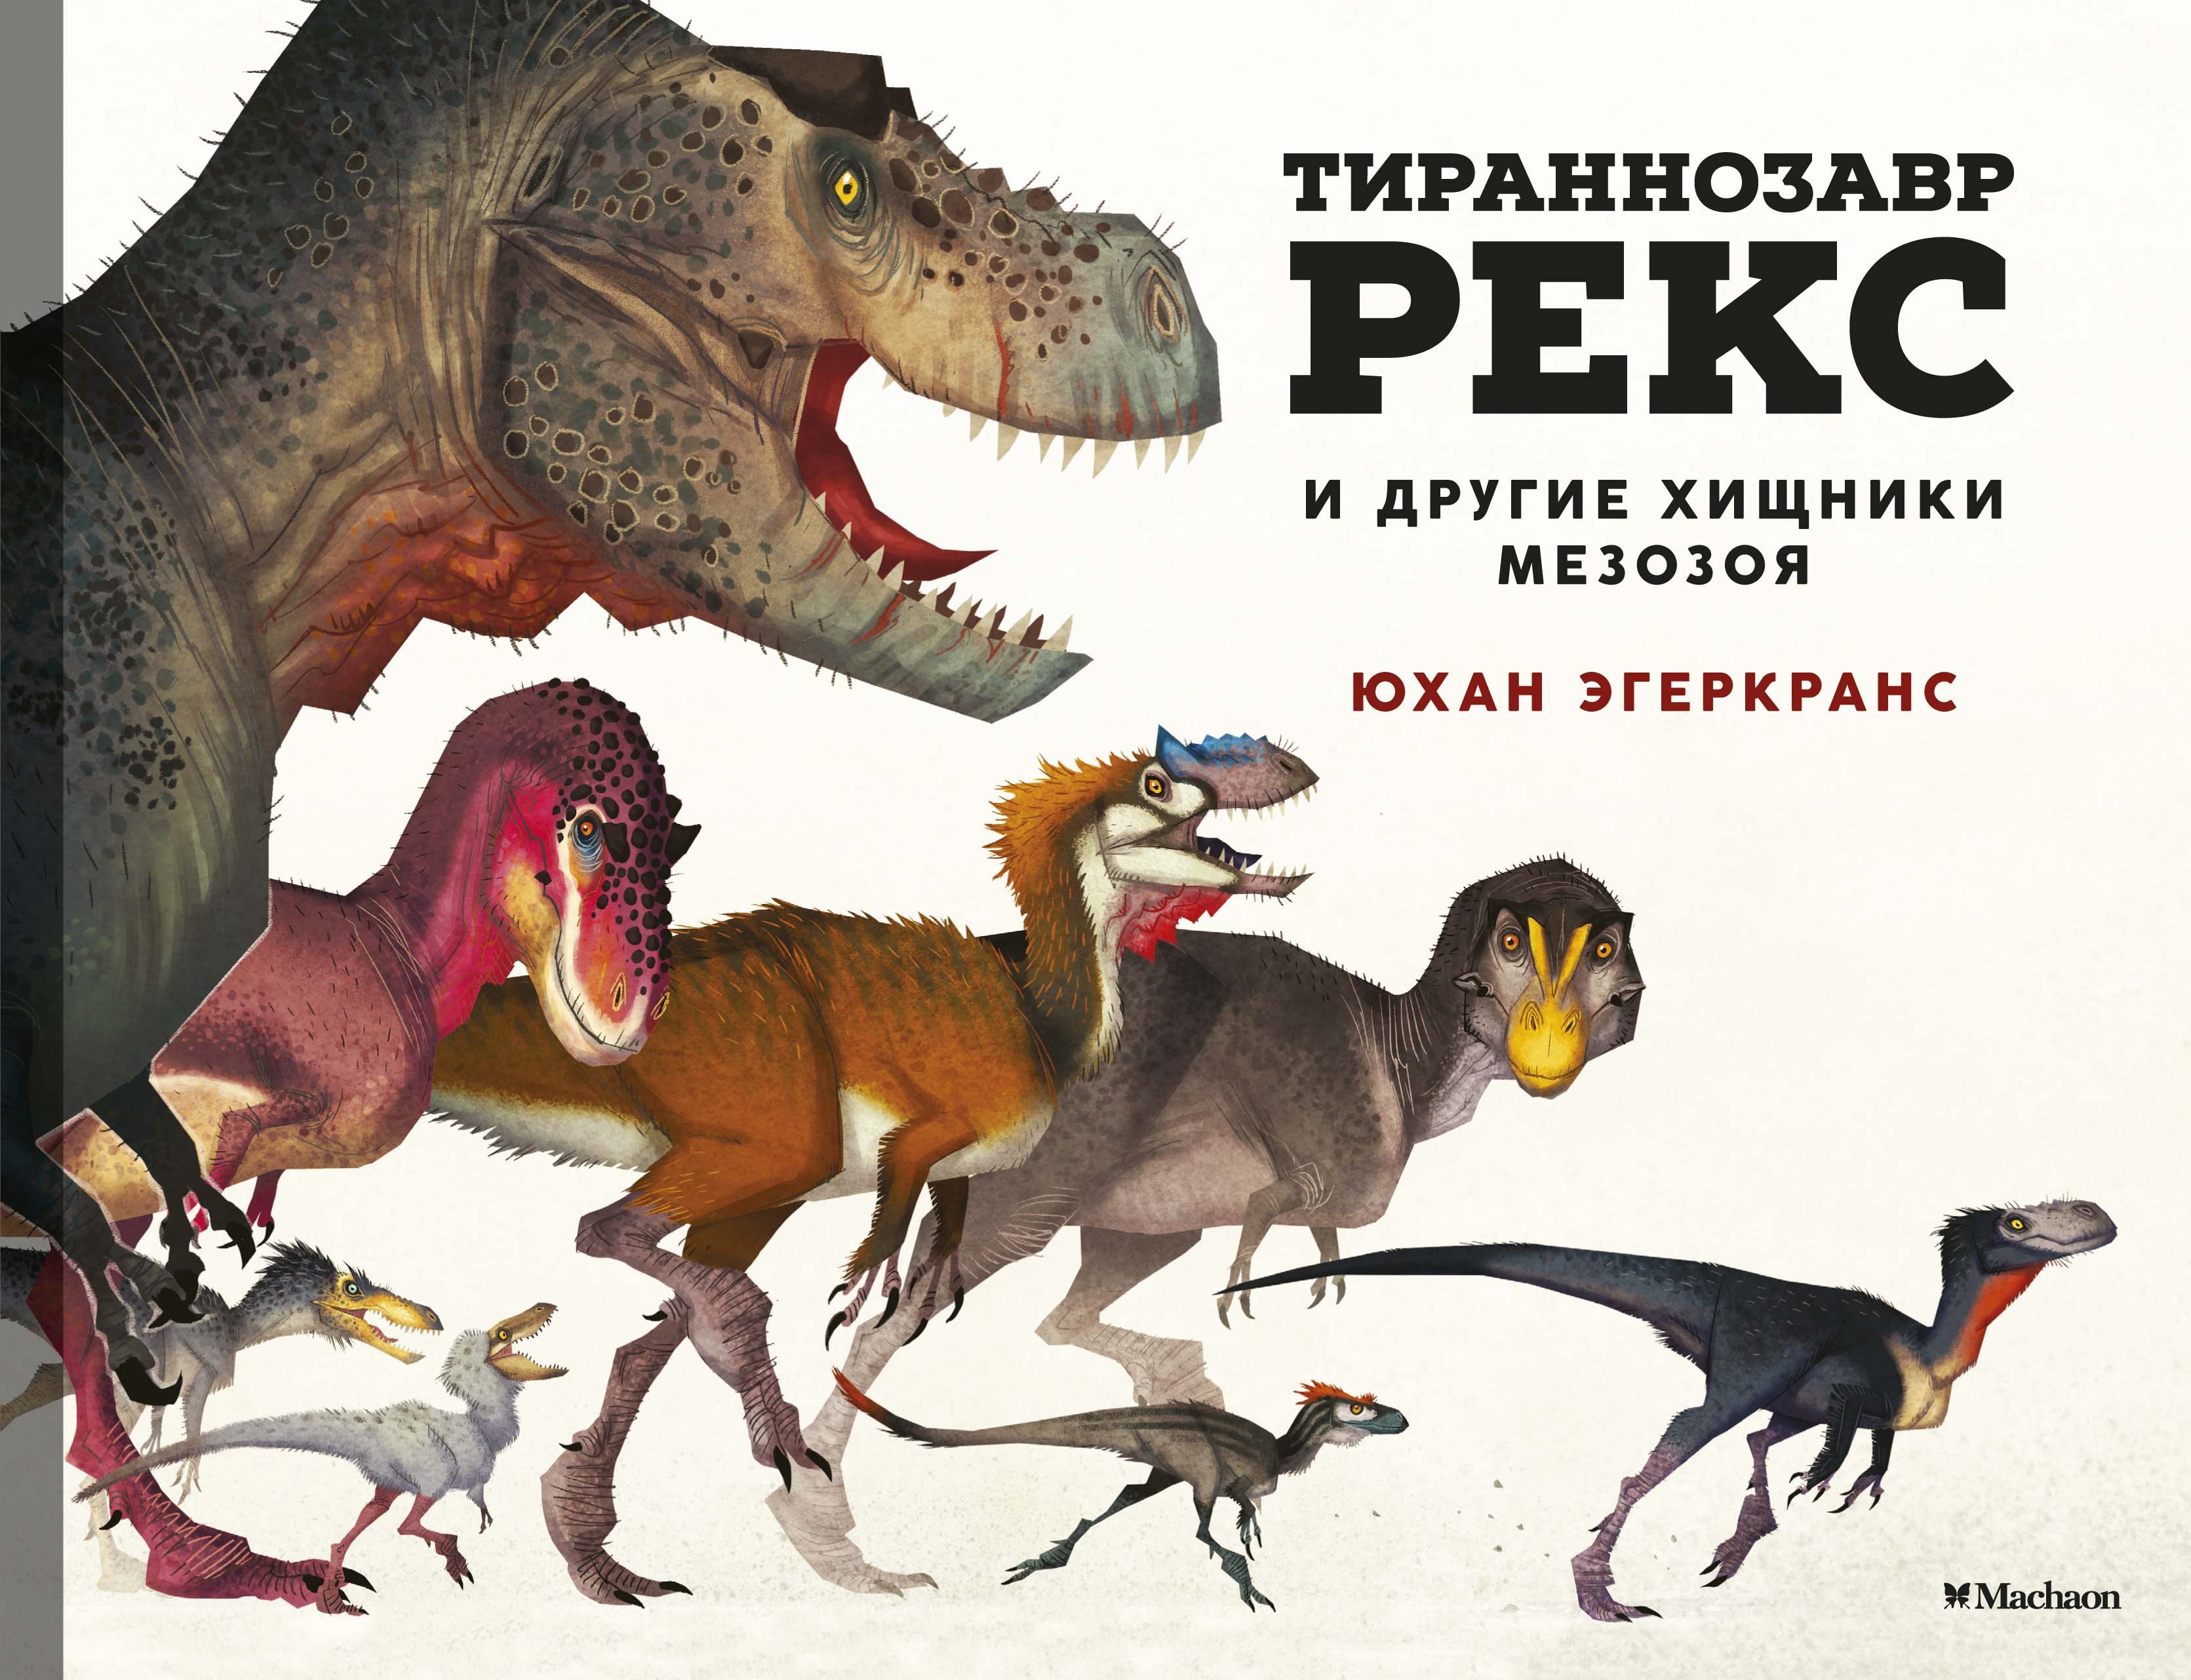 Тираннозавр Рекс и другие хищники мезозоя : Эгеркранс Юхан